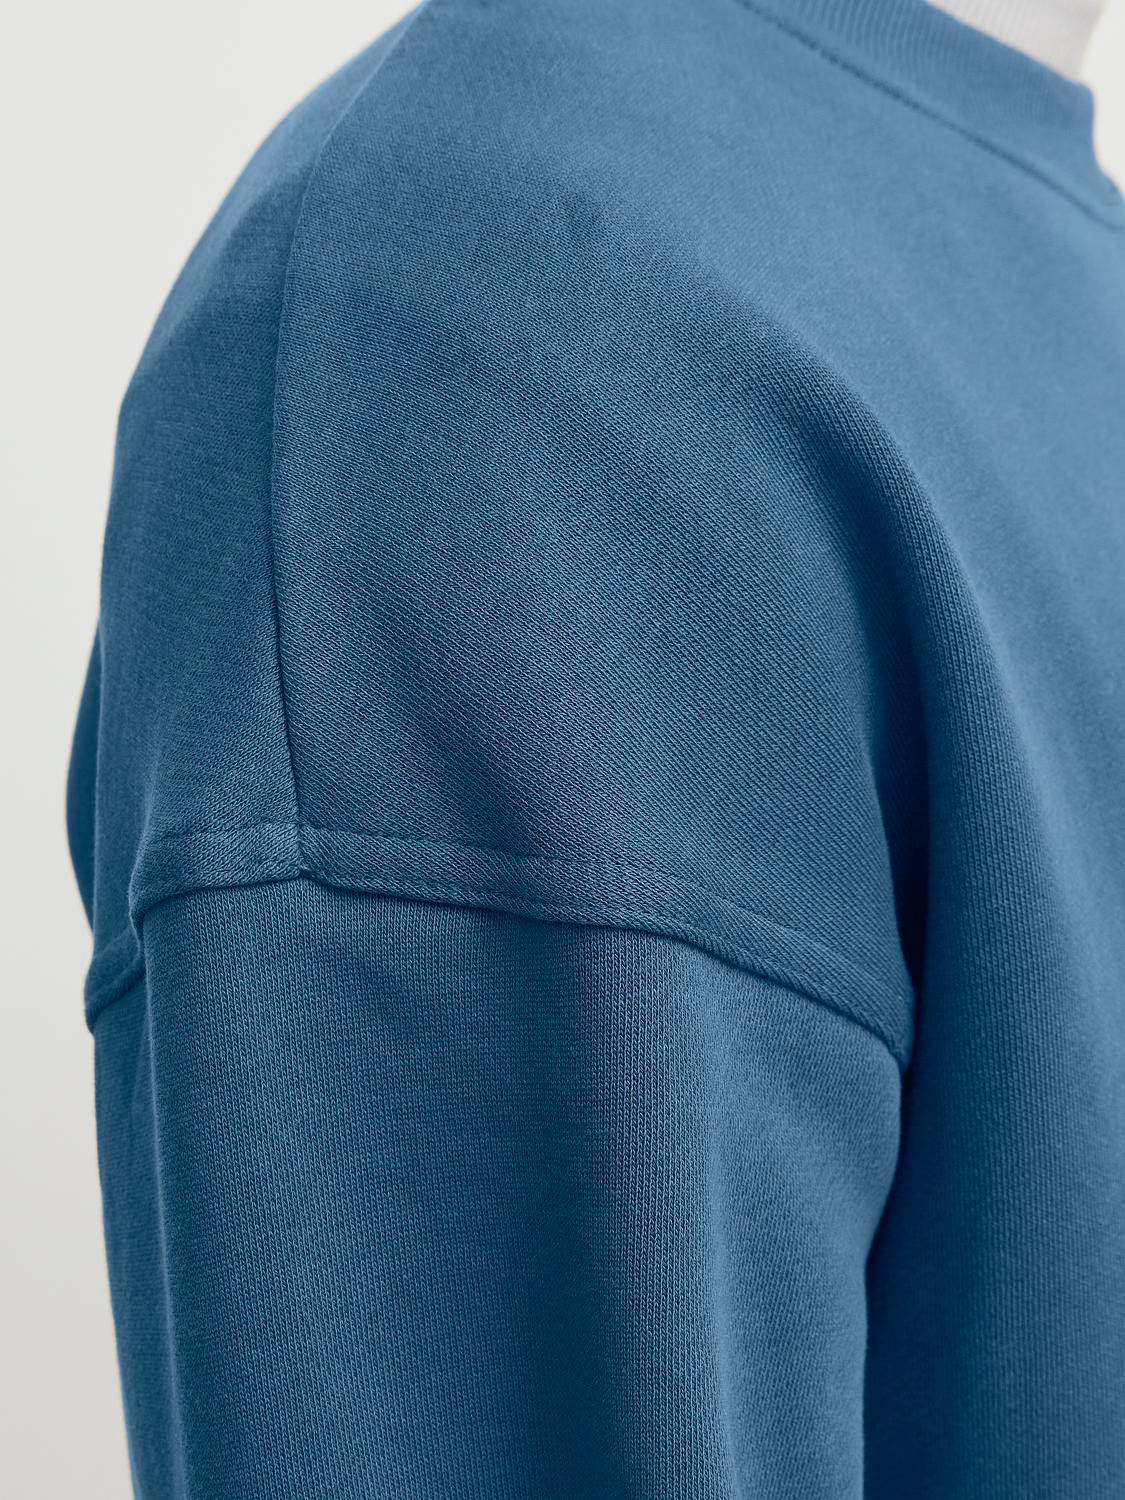 Jack & Jones Plain Crew neck Sweatshirt -Ensign Blue - 12251330